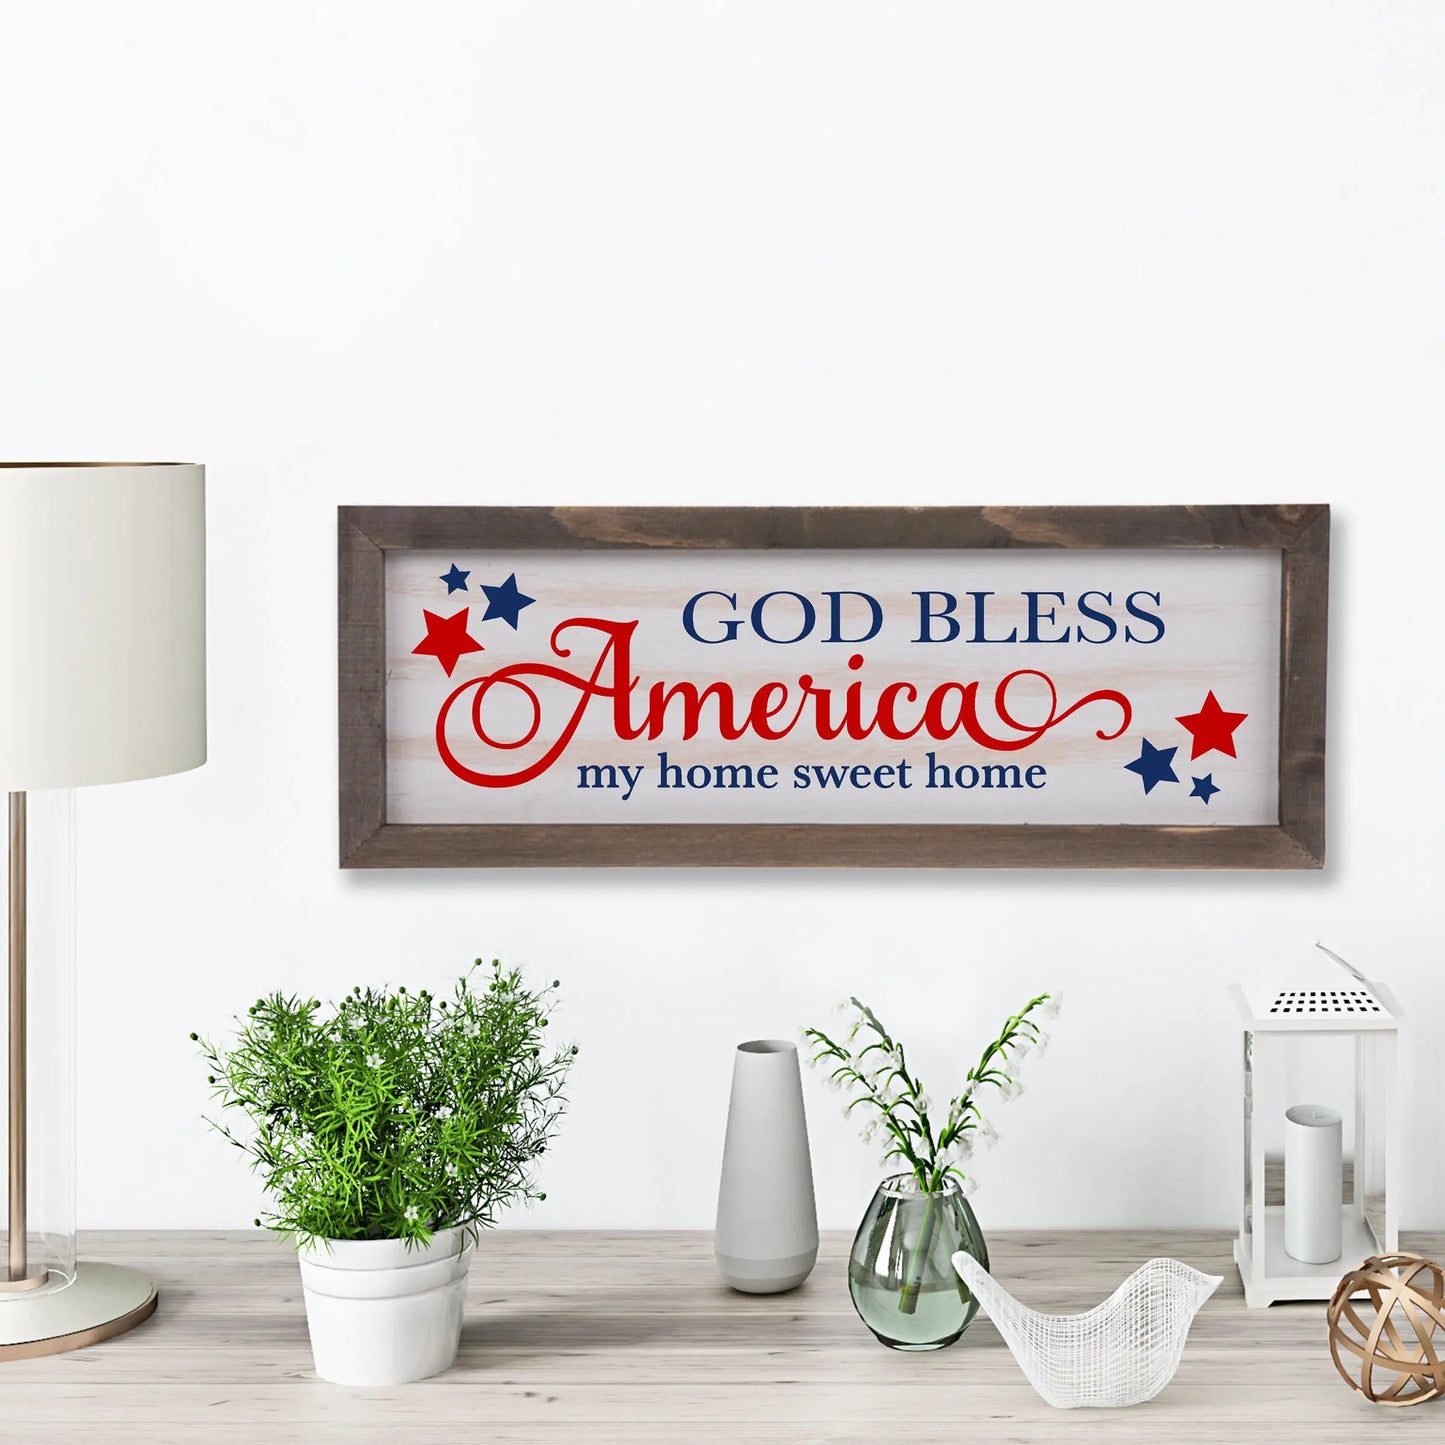 God Bless America Rustic Whitewashed Wood Frame Sign | 5.5" x 15" Farmhouse Decor | Christian Wood Decor amazingfaithdesigns